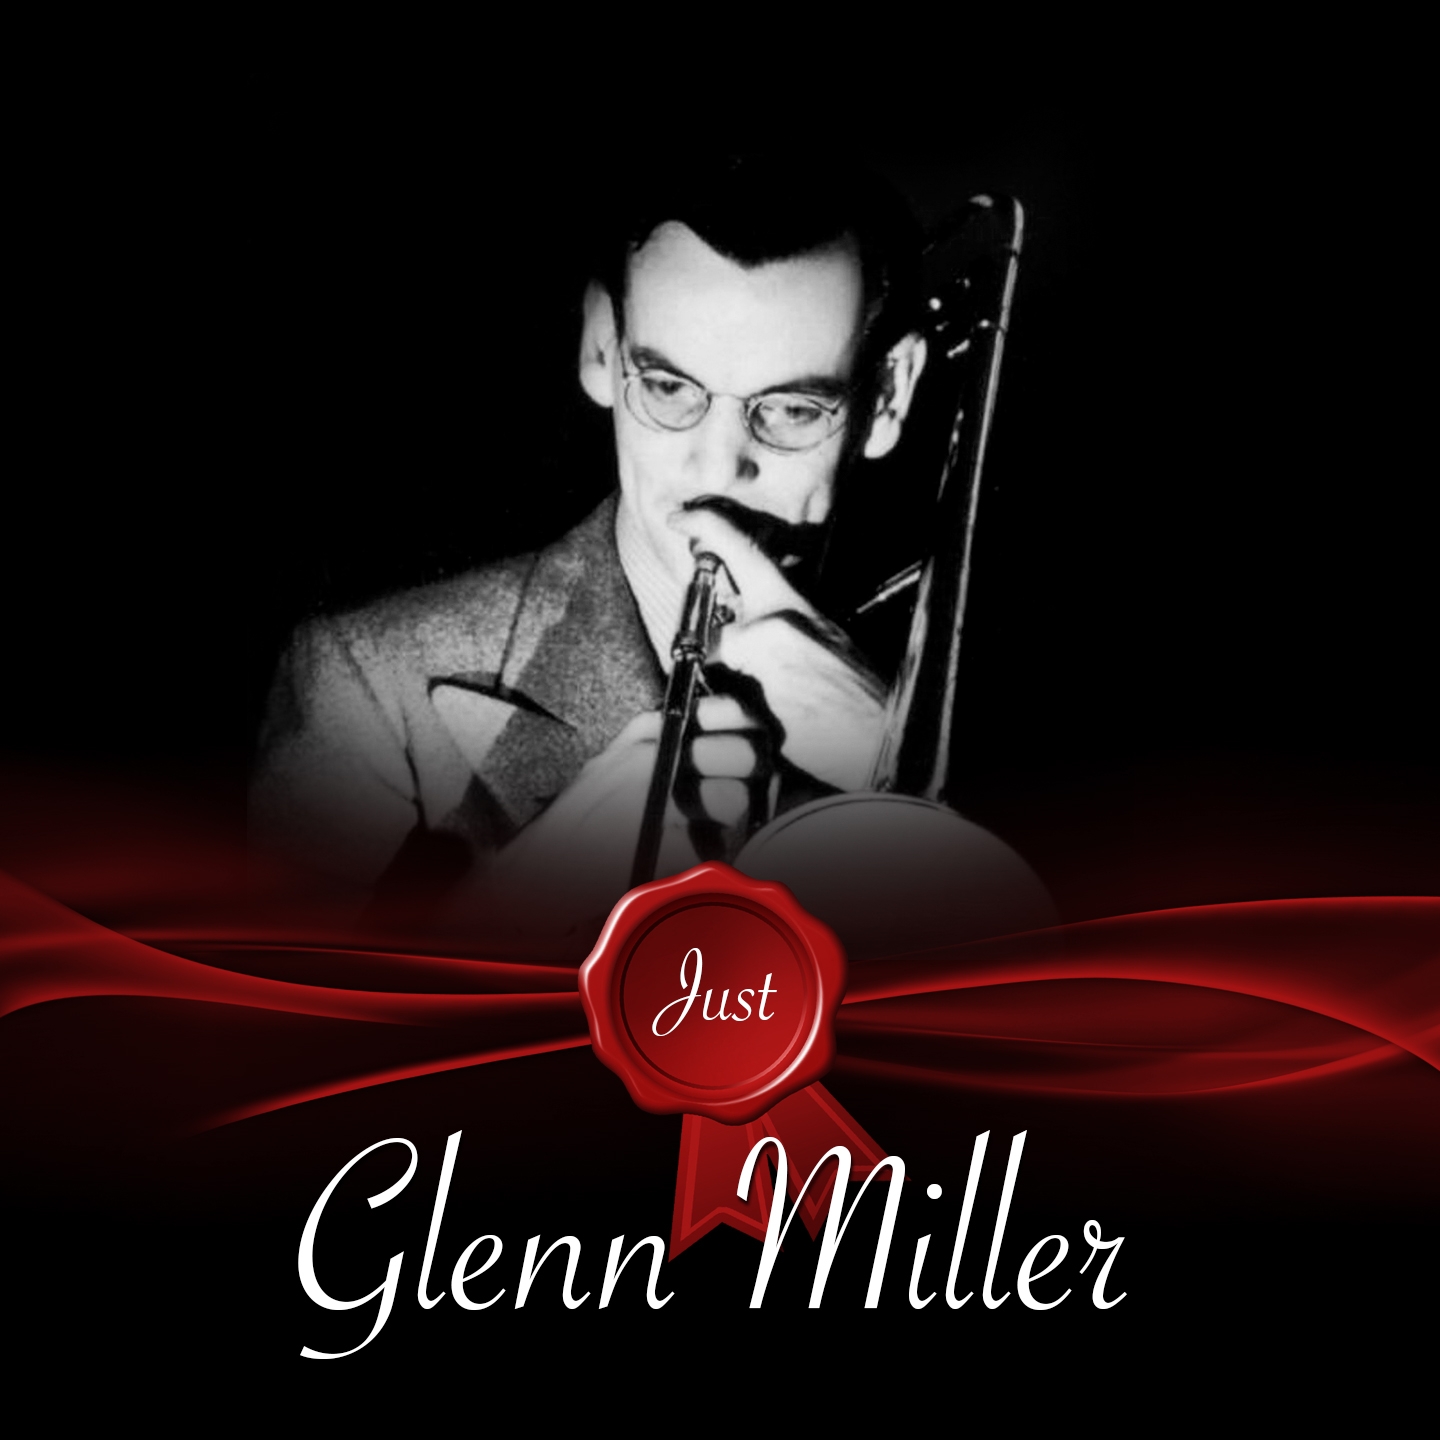 Just - Glenn Miller